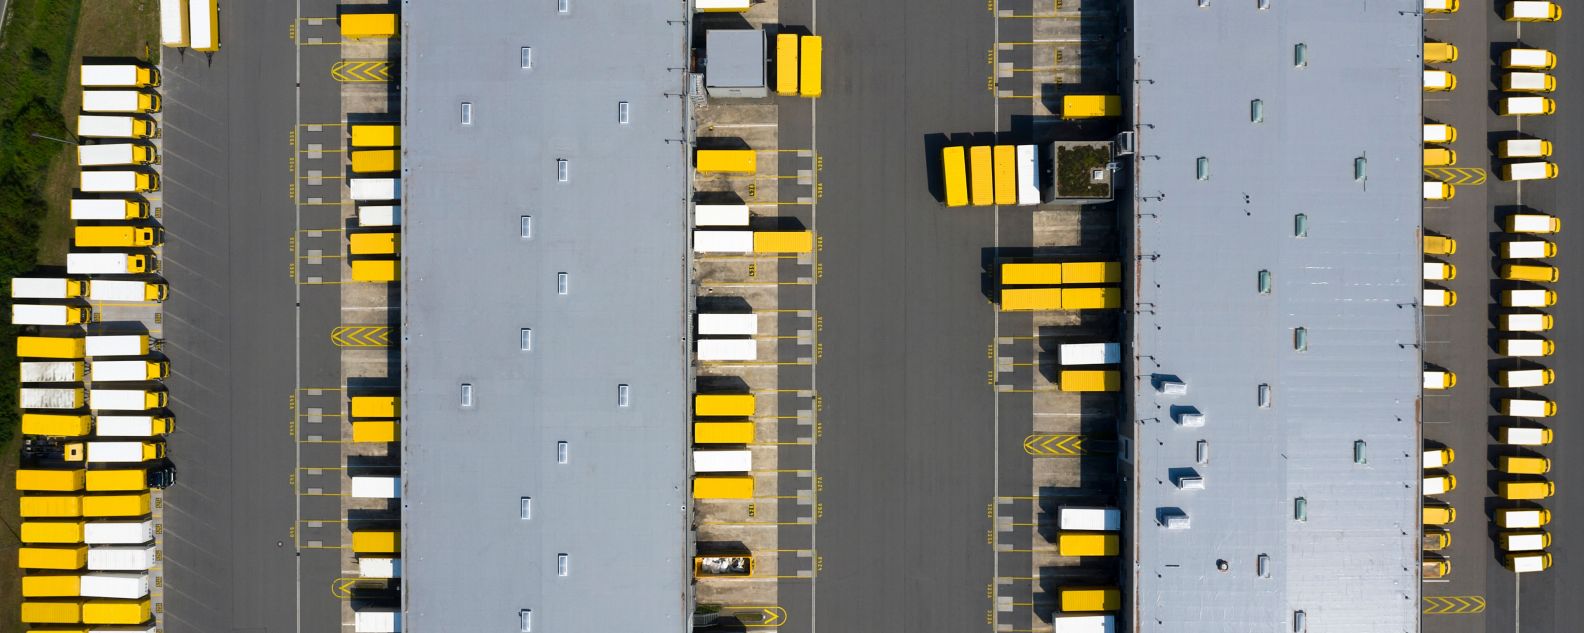 Vista aérea de contêineres de carga e de armazém de distribuição